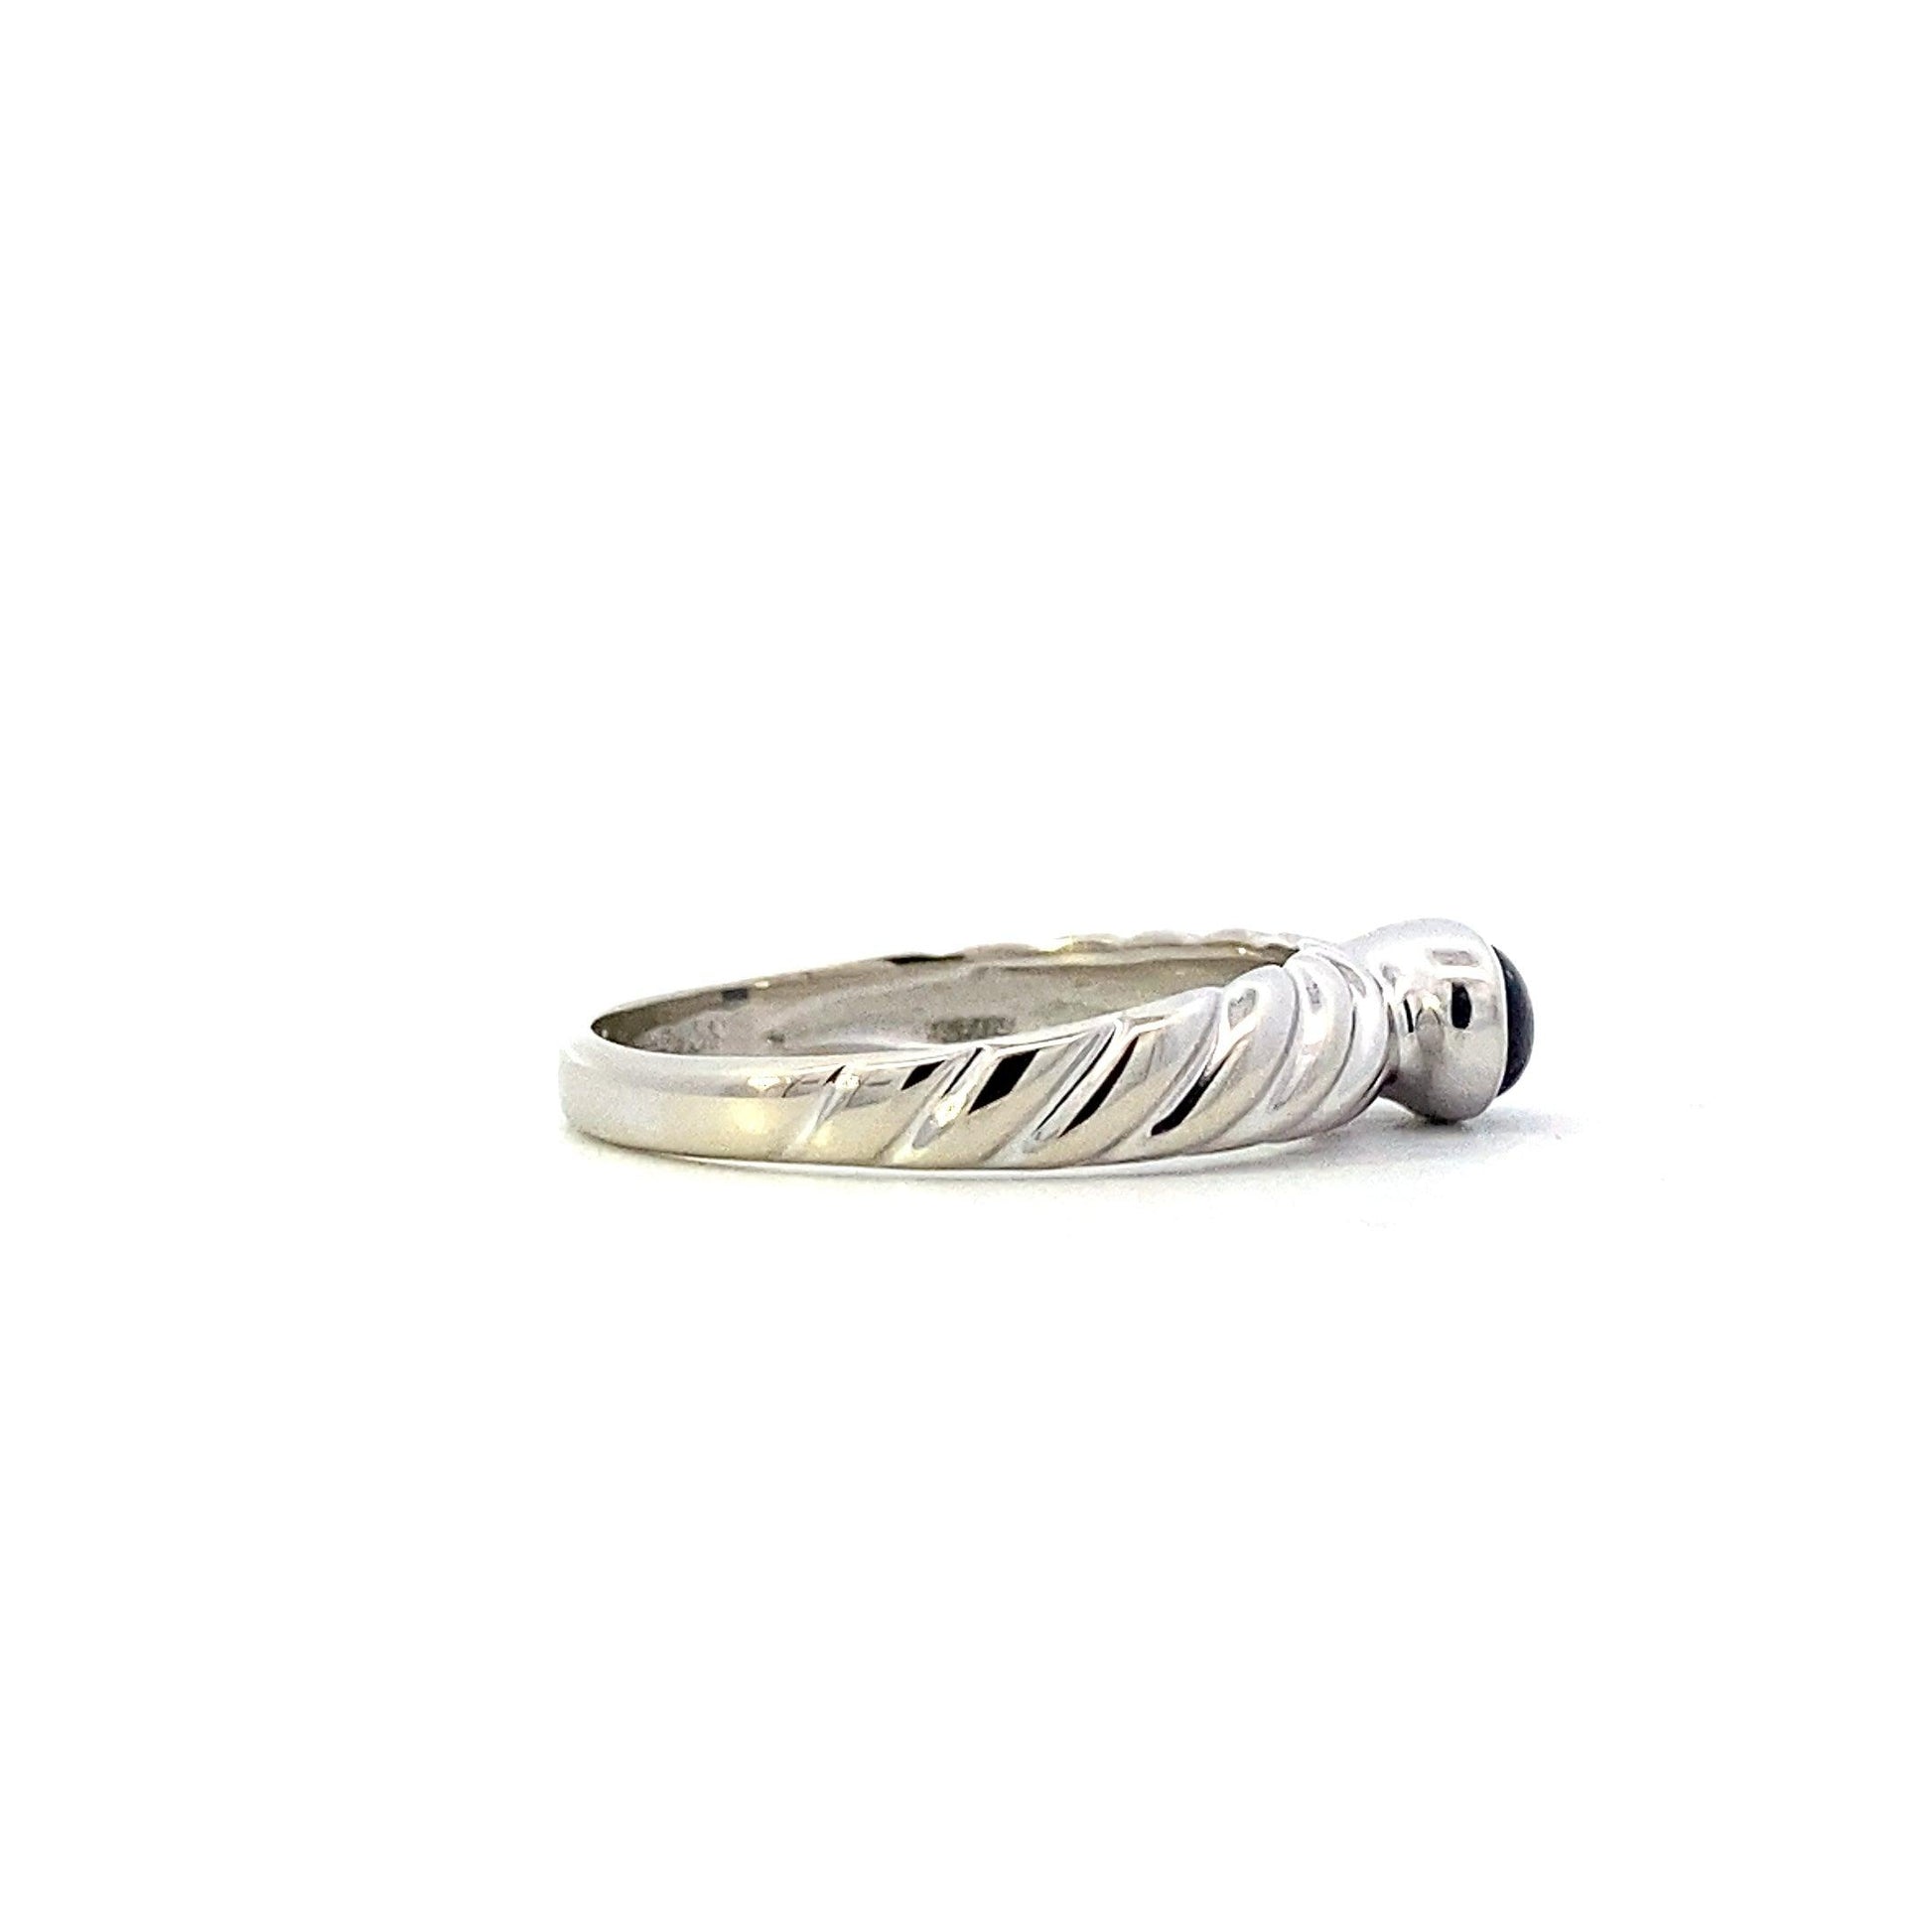 10K White Gold Bezel Set Blue Sapphire Ring - ipawnishop.com